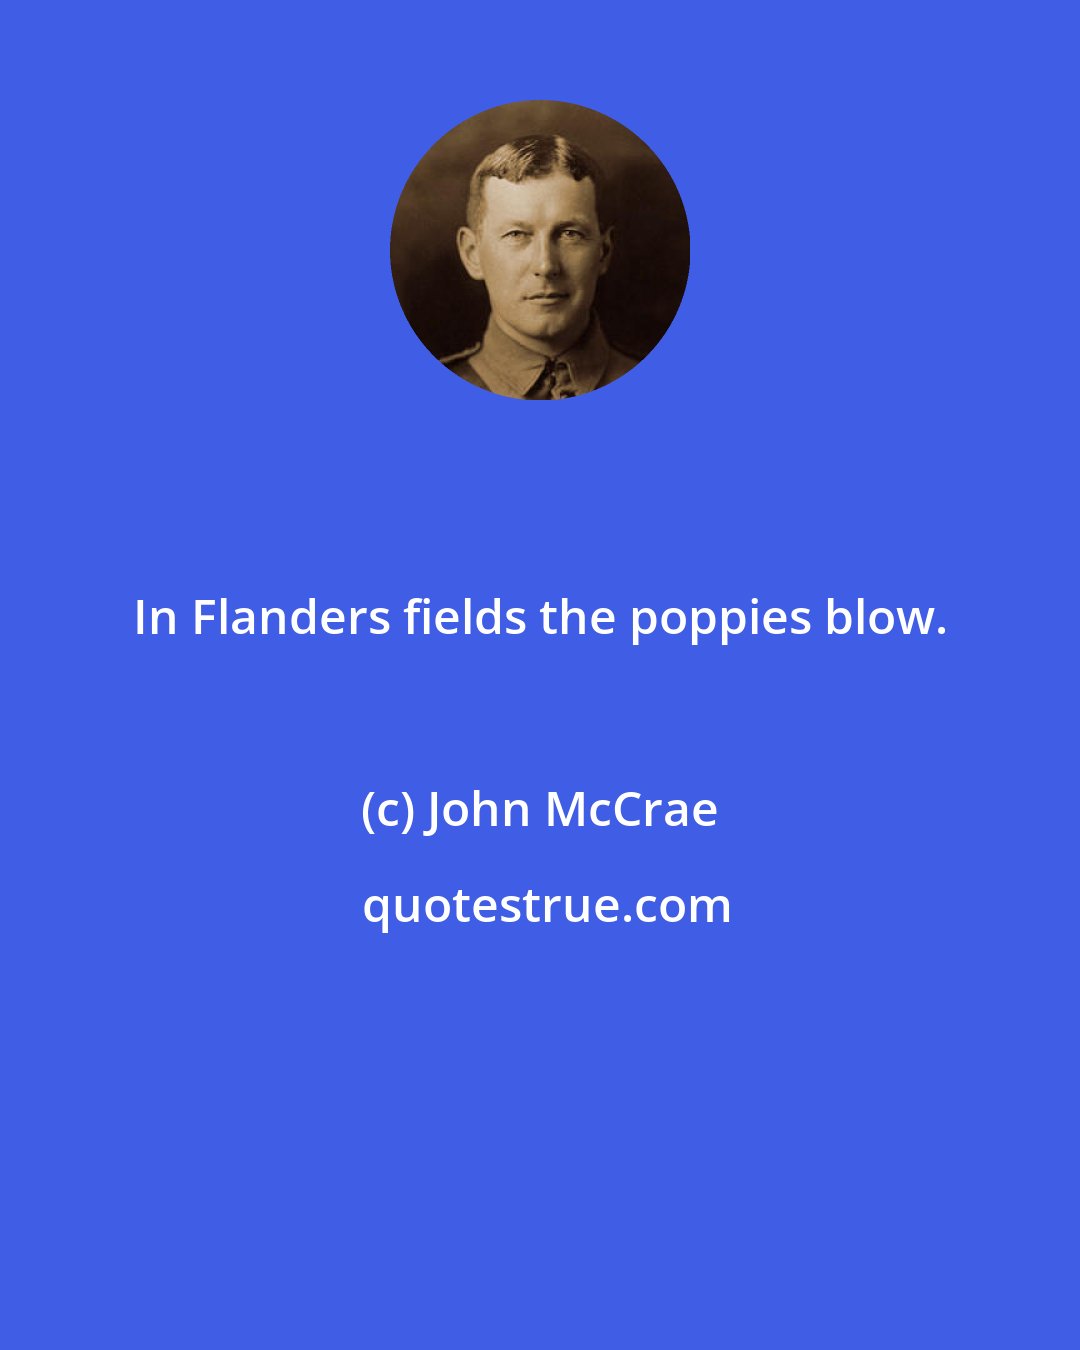 John McCrae: In Flanders fields the poppies blow.